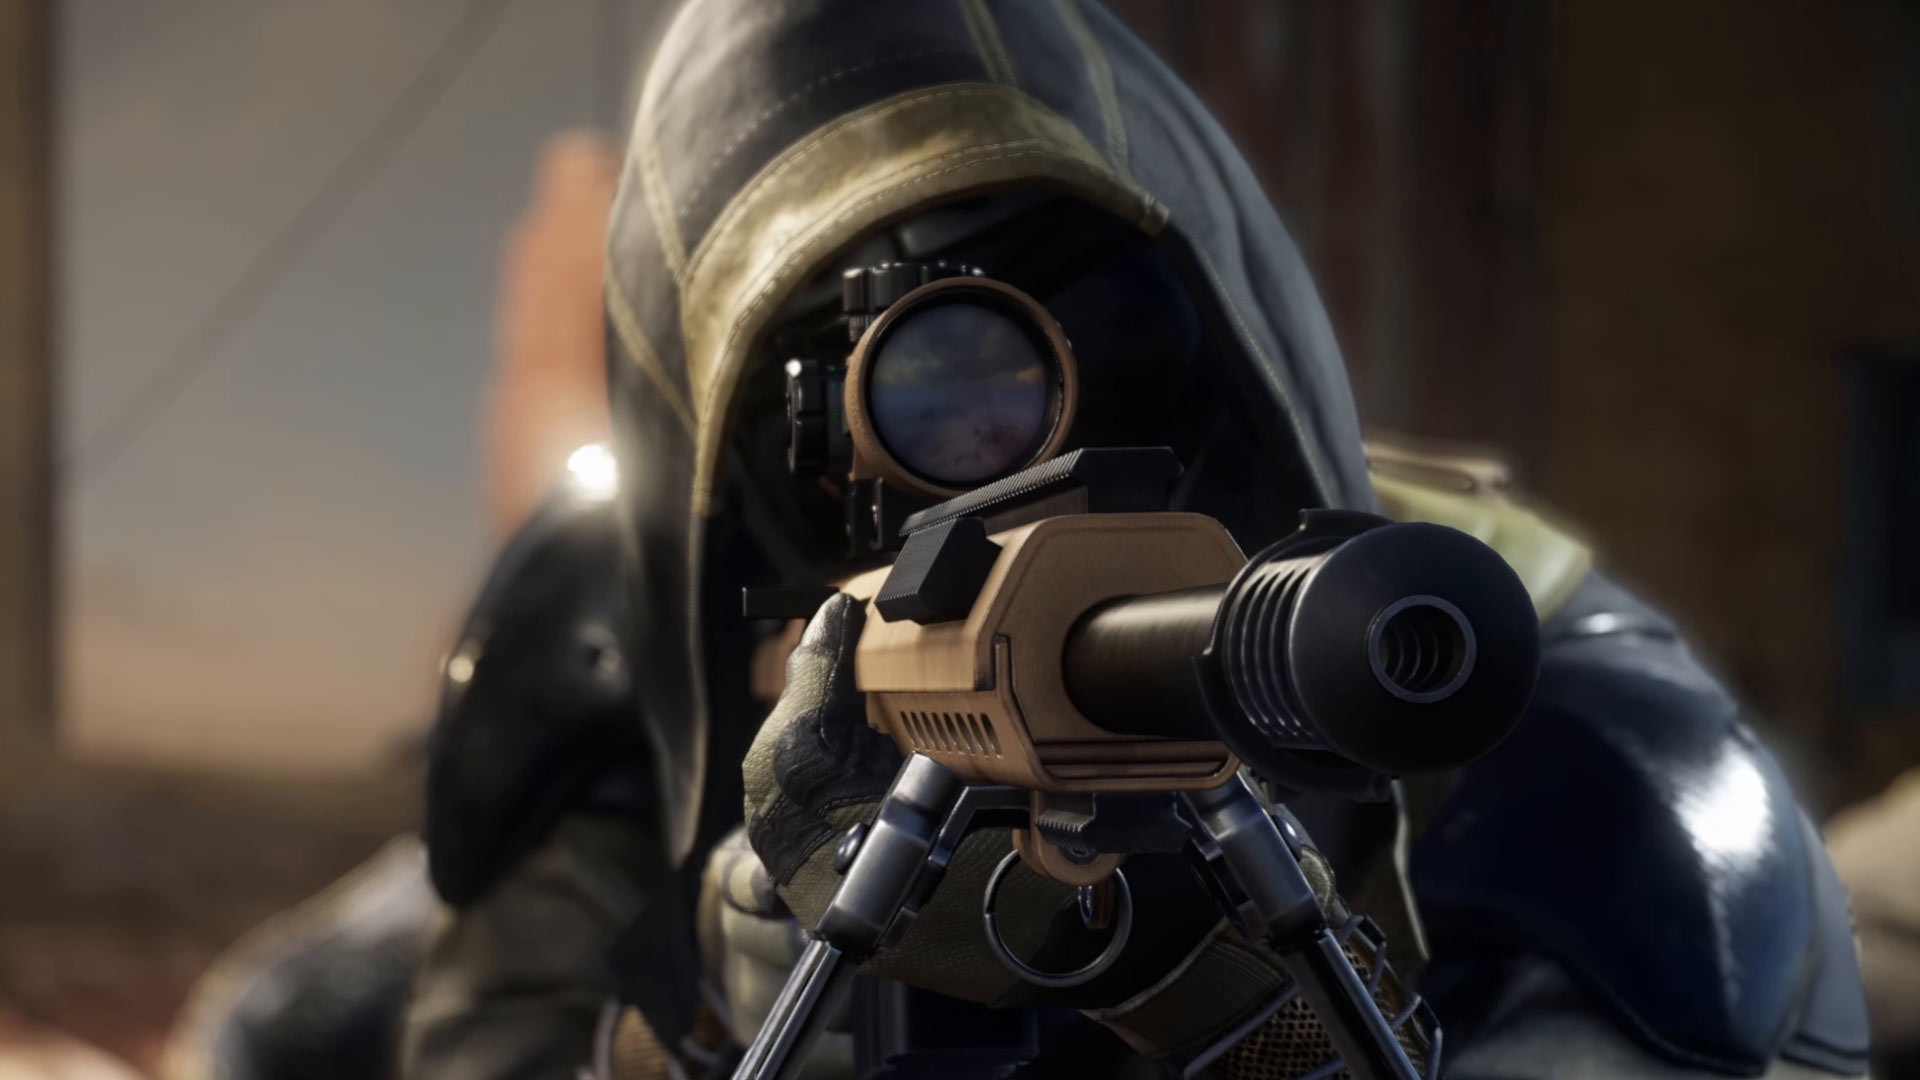 خرید بازی Sniper Ghost Warrior Contracts 2 برای PS4